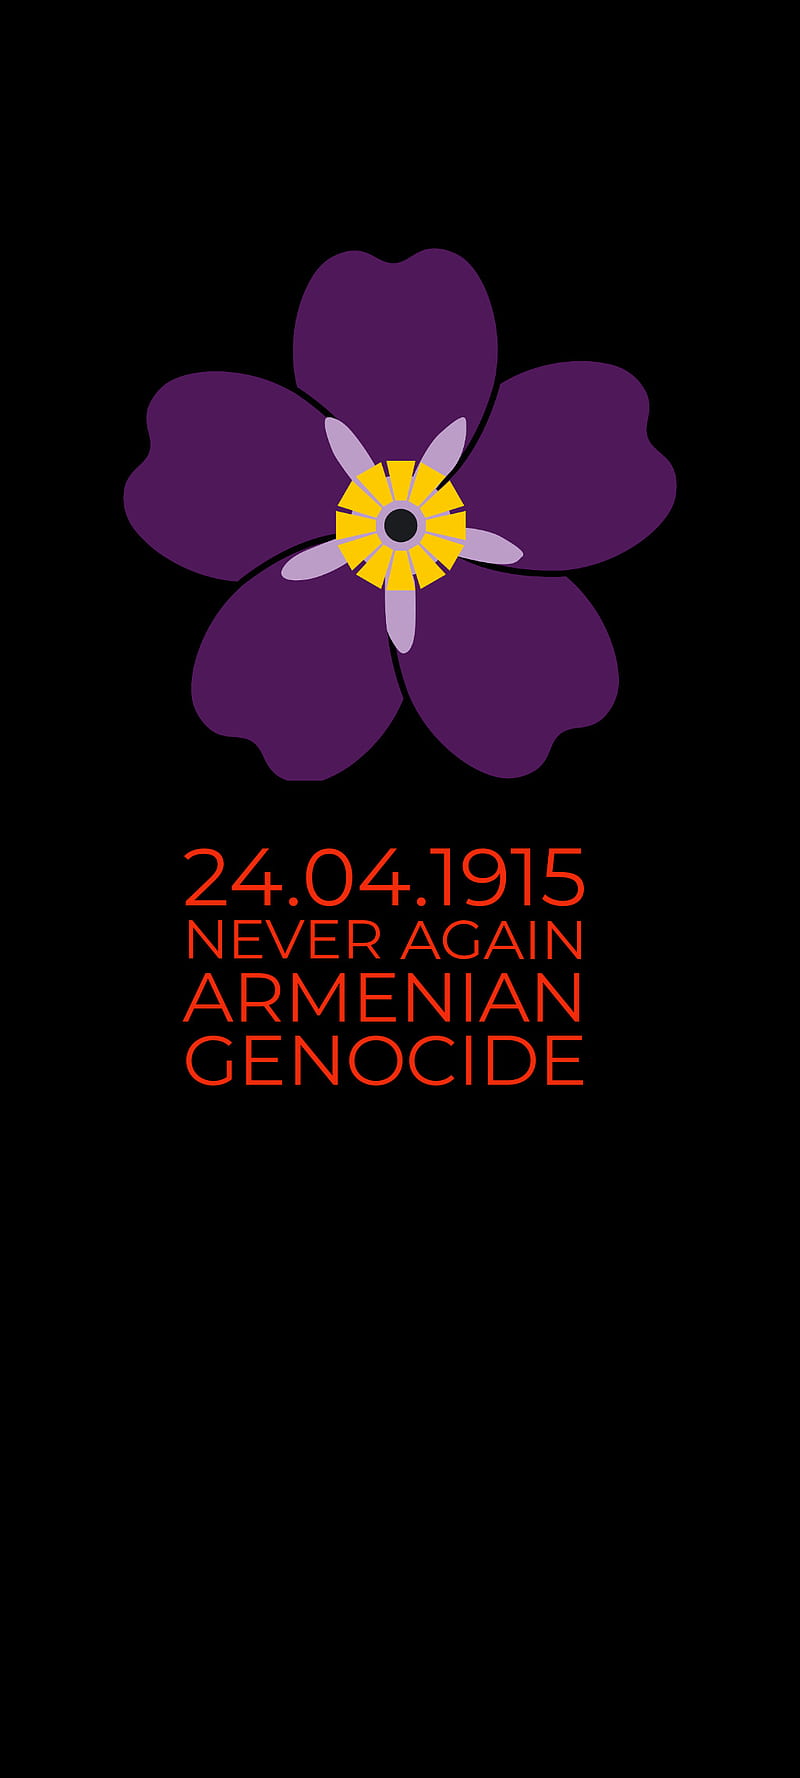 Armenian Genocide, 1915, anmoruk, april 24, armenia, armenian, genocide, never again, HD phone wallpaper